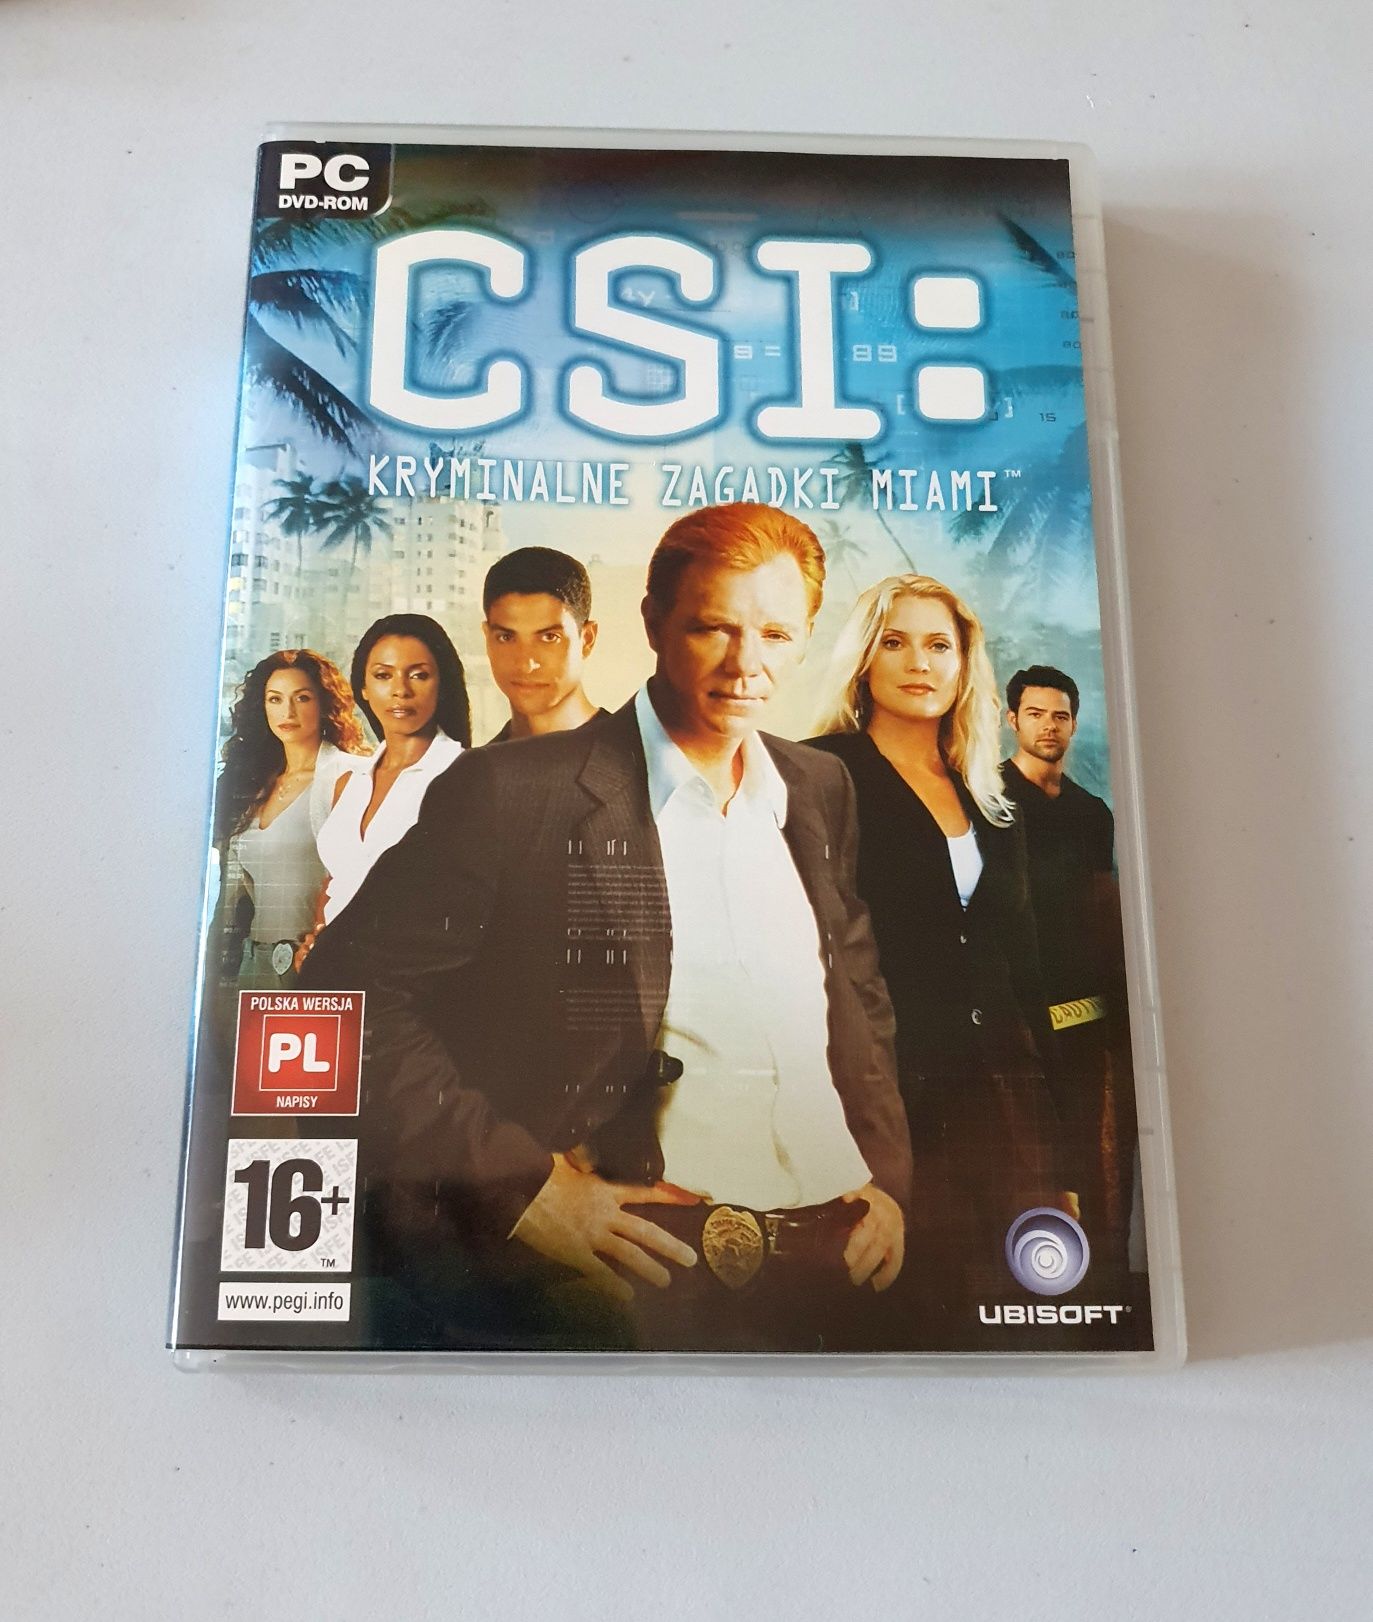 CSI Kryminalne Zagadki 3 gry detektywistyczne